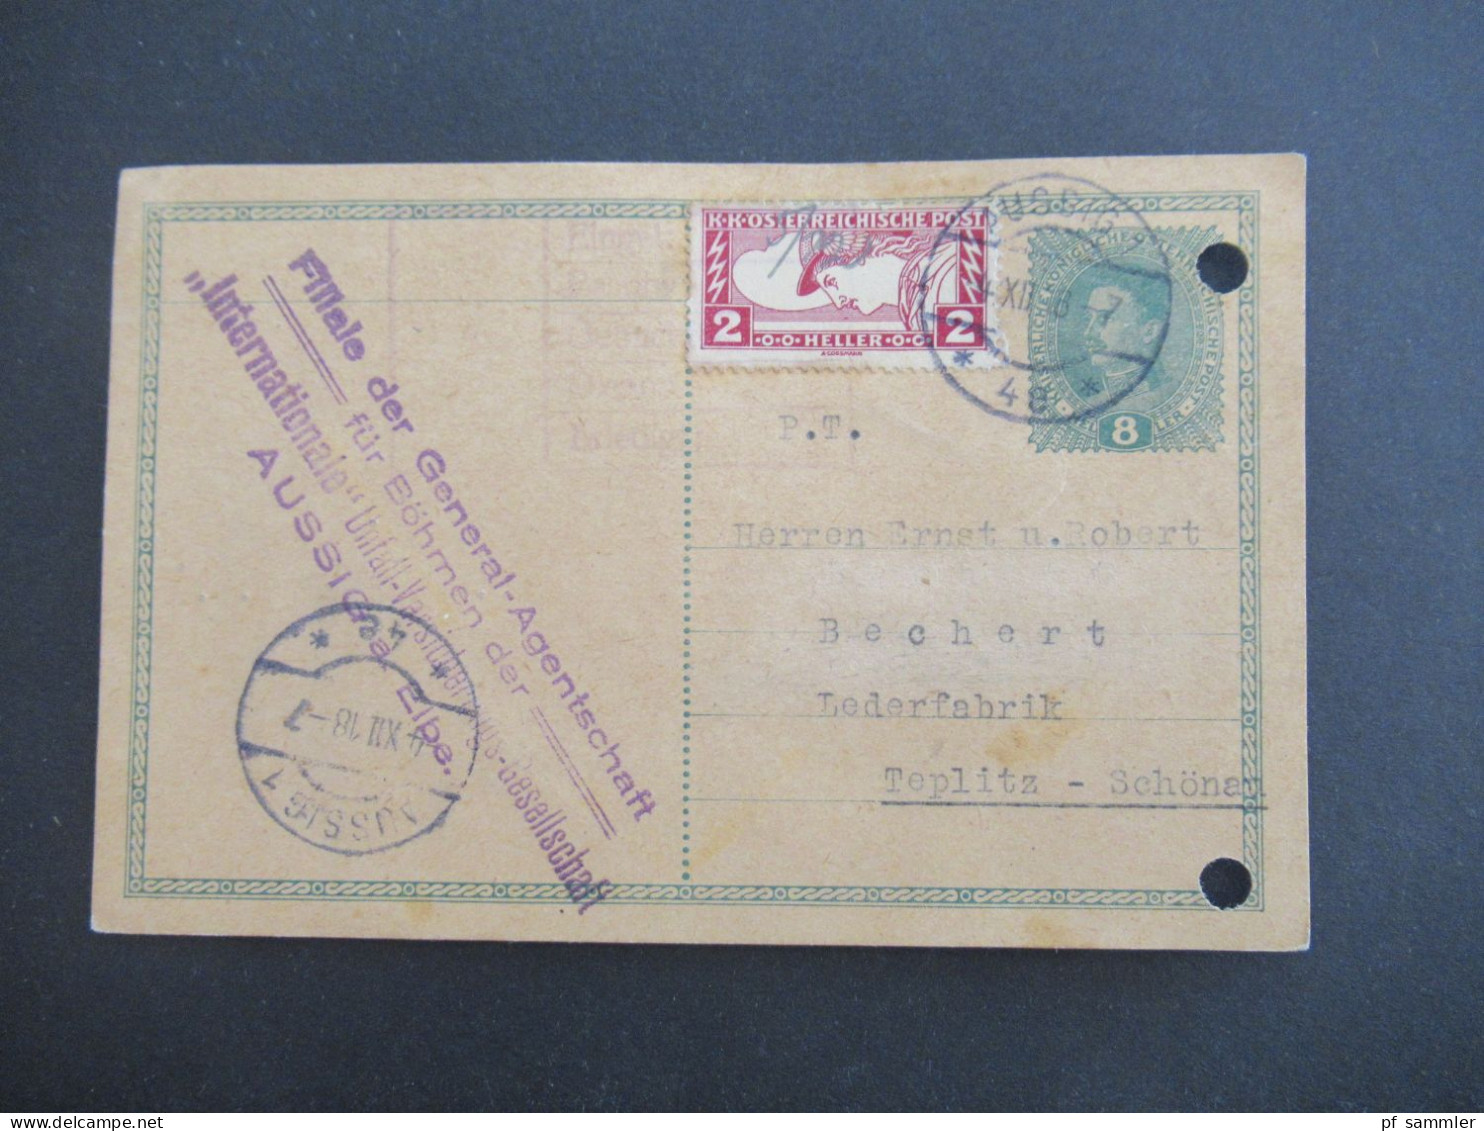 Österreich / Sudeten 1918 Ganzsache 8 Heller Mit Zusatzfrankatur Drucksachen Eilmarke Mi.Nr.219 Aussig - Teplitz Schönau - Postcards